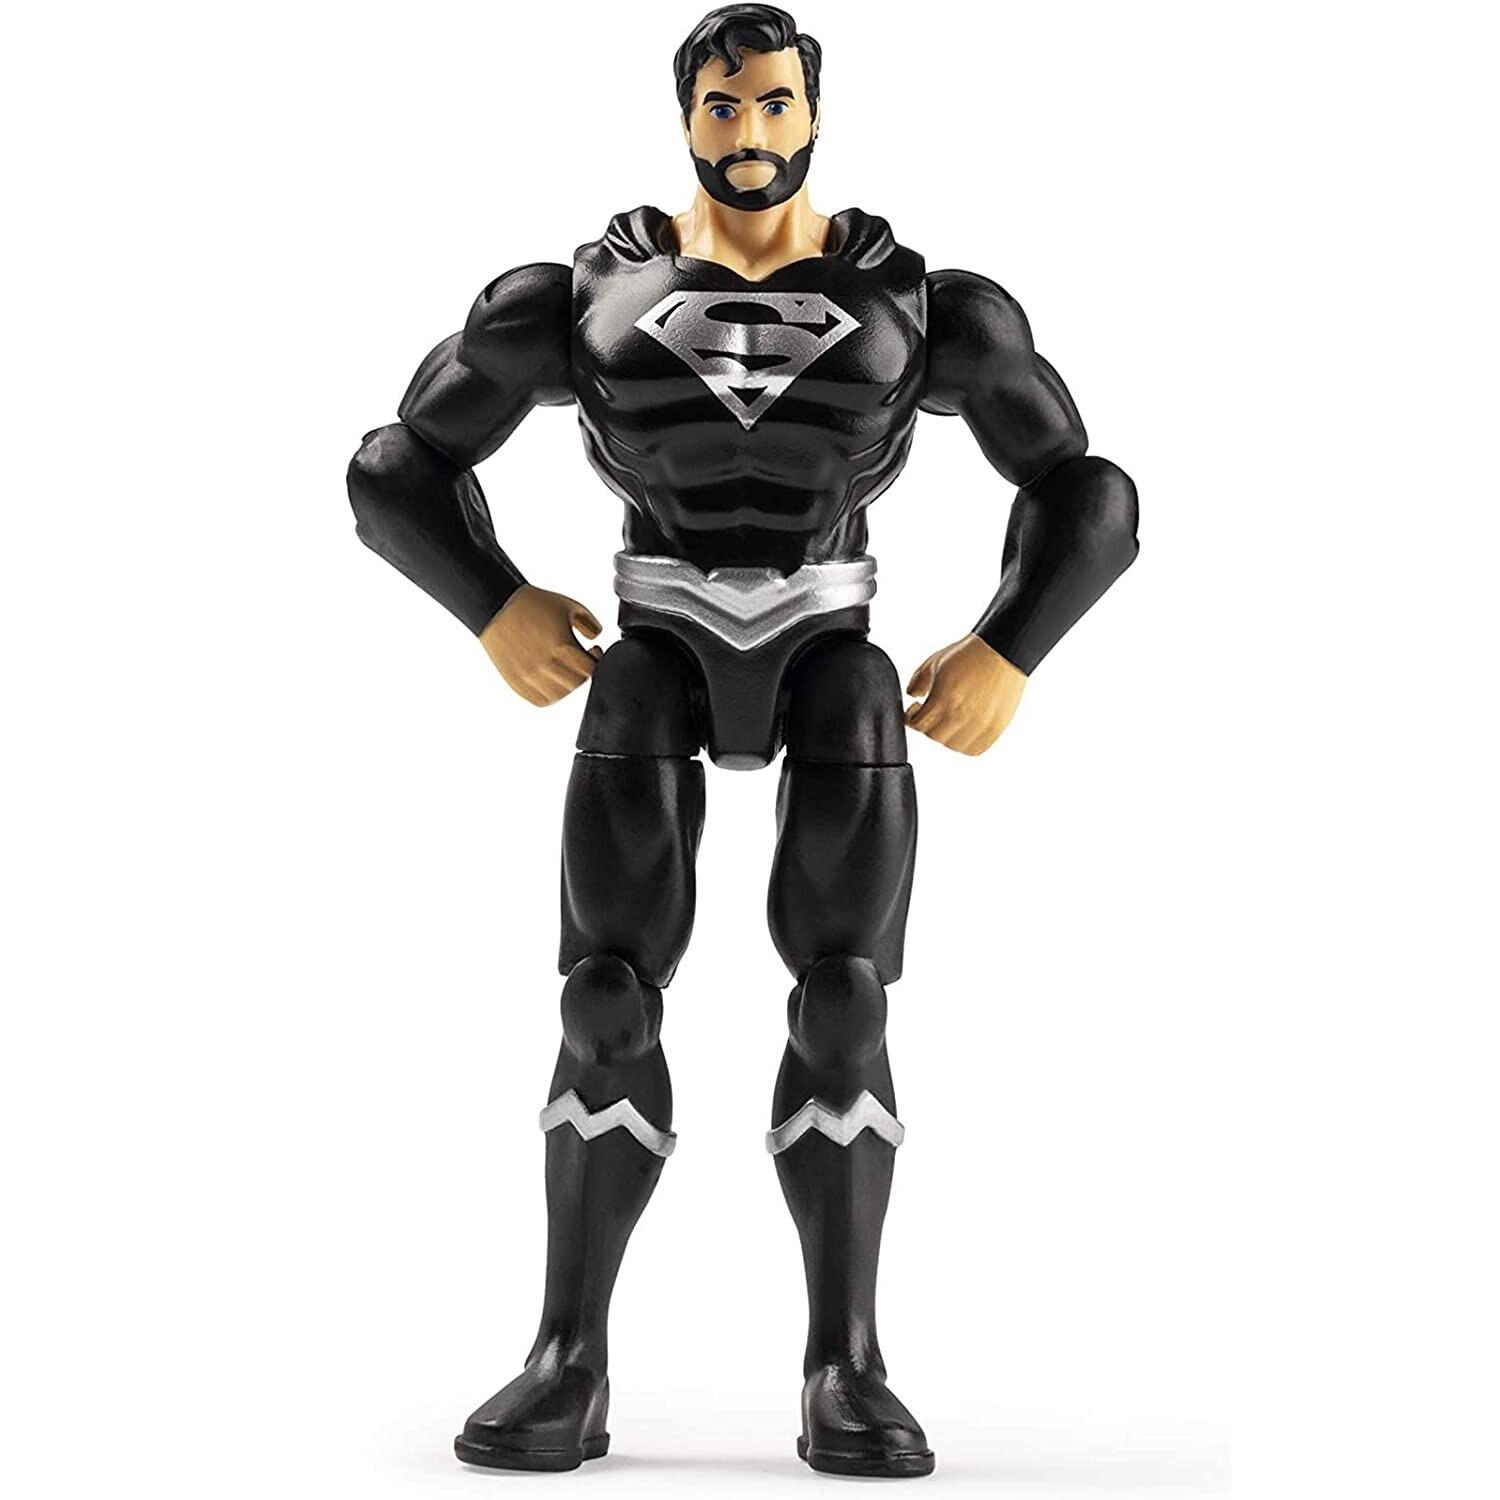 DC Heroes Unite 4 Inch Action Figure - Superman (Black Suit)